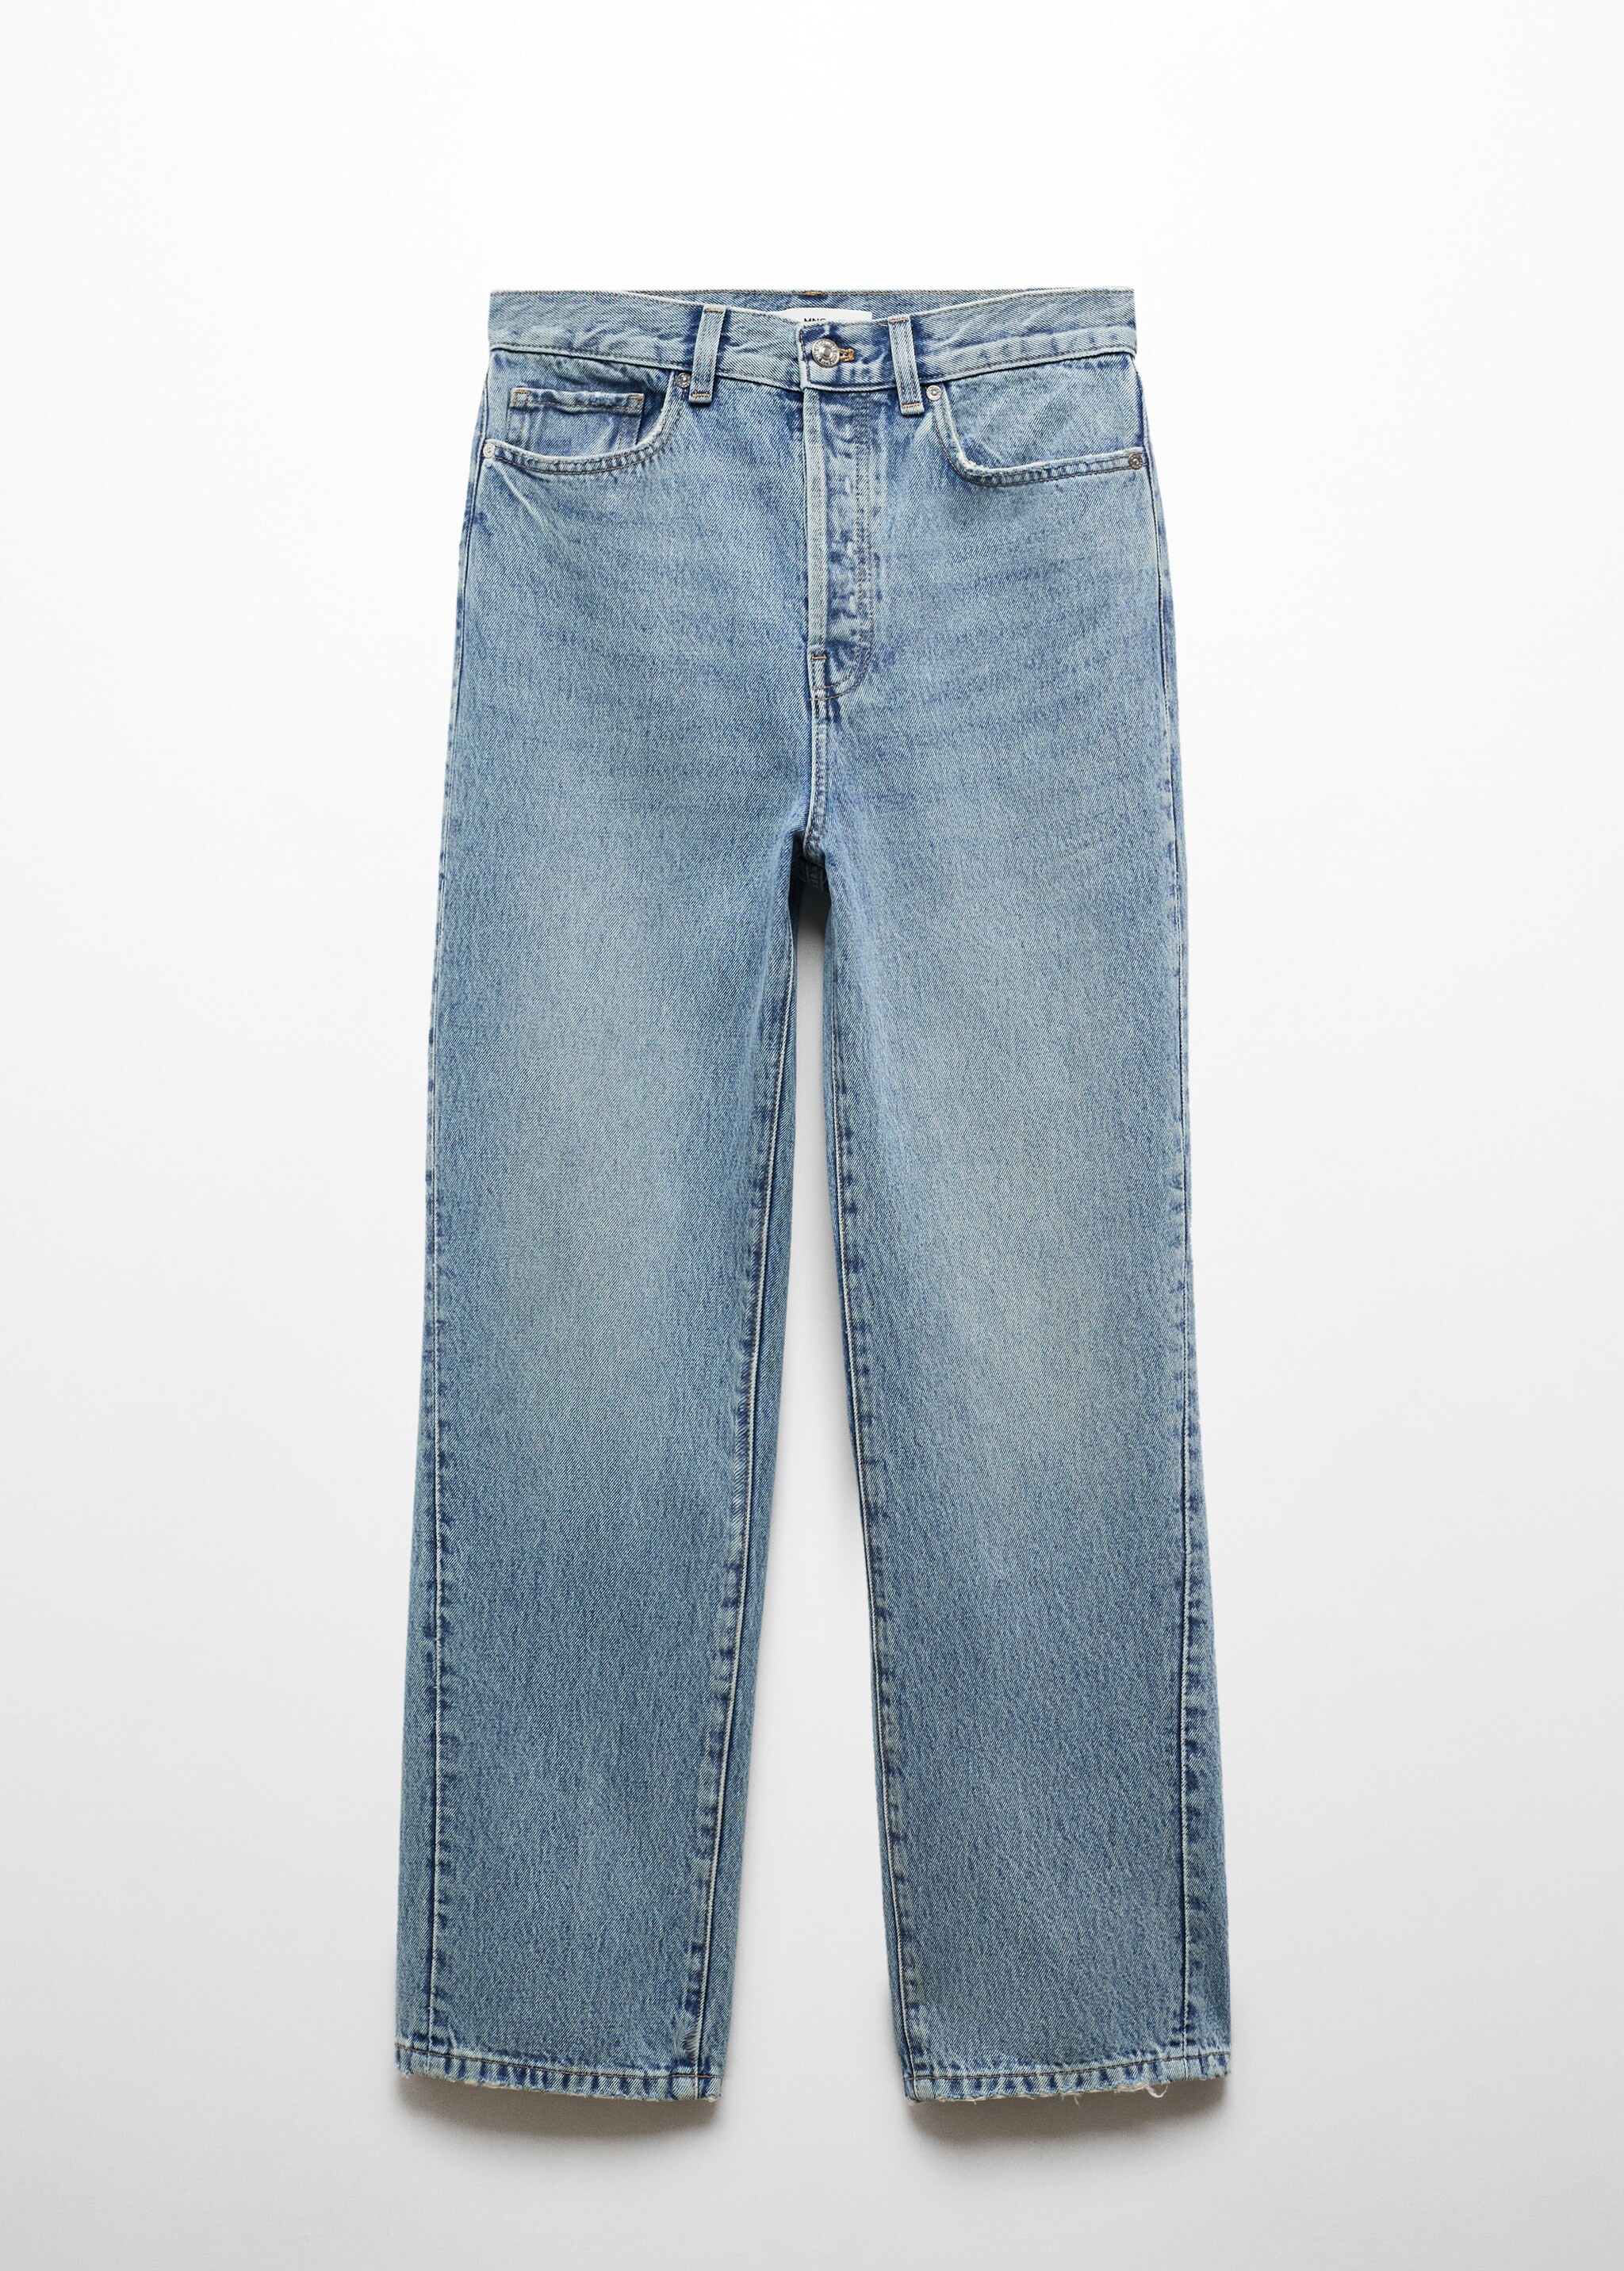 Прямые джинсы с диагональными швами - Изделие без модели